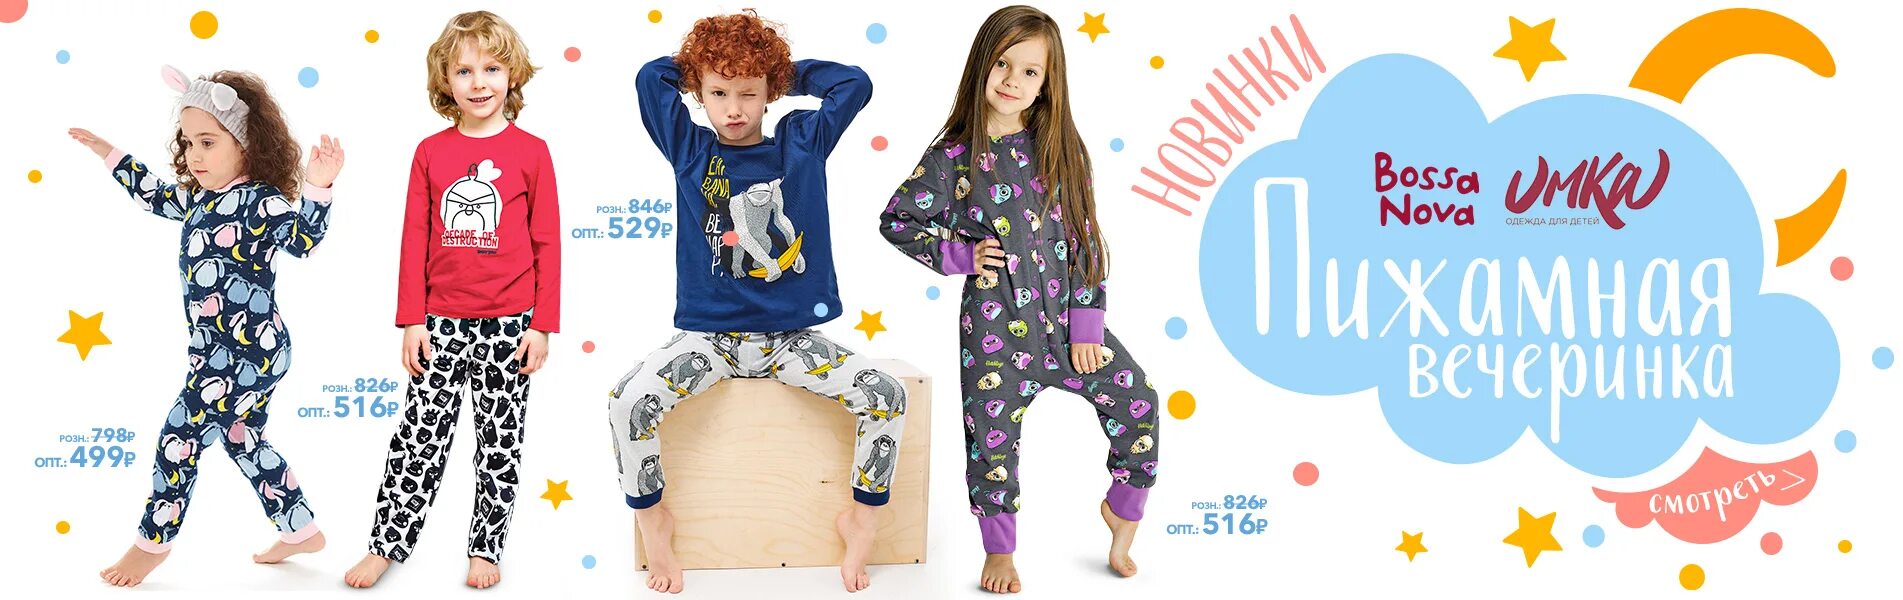 Сайт интернет магазина хеппивеар. Пижамная вечеринка для детей афиша. Коллекция для малышей хеппивар. HAPPYWEAR верхняя детская одежда.